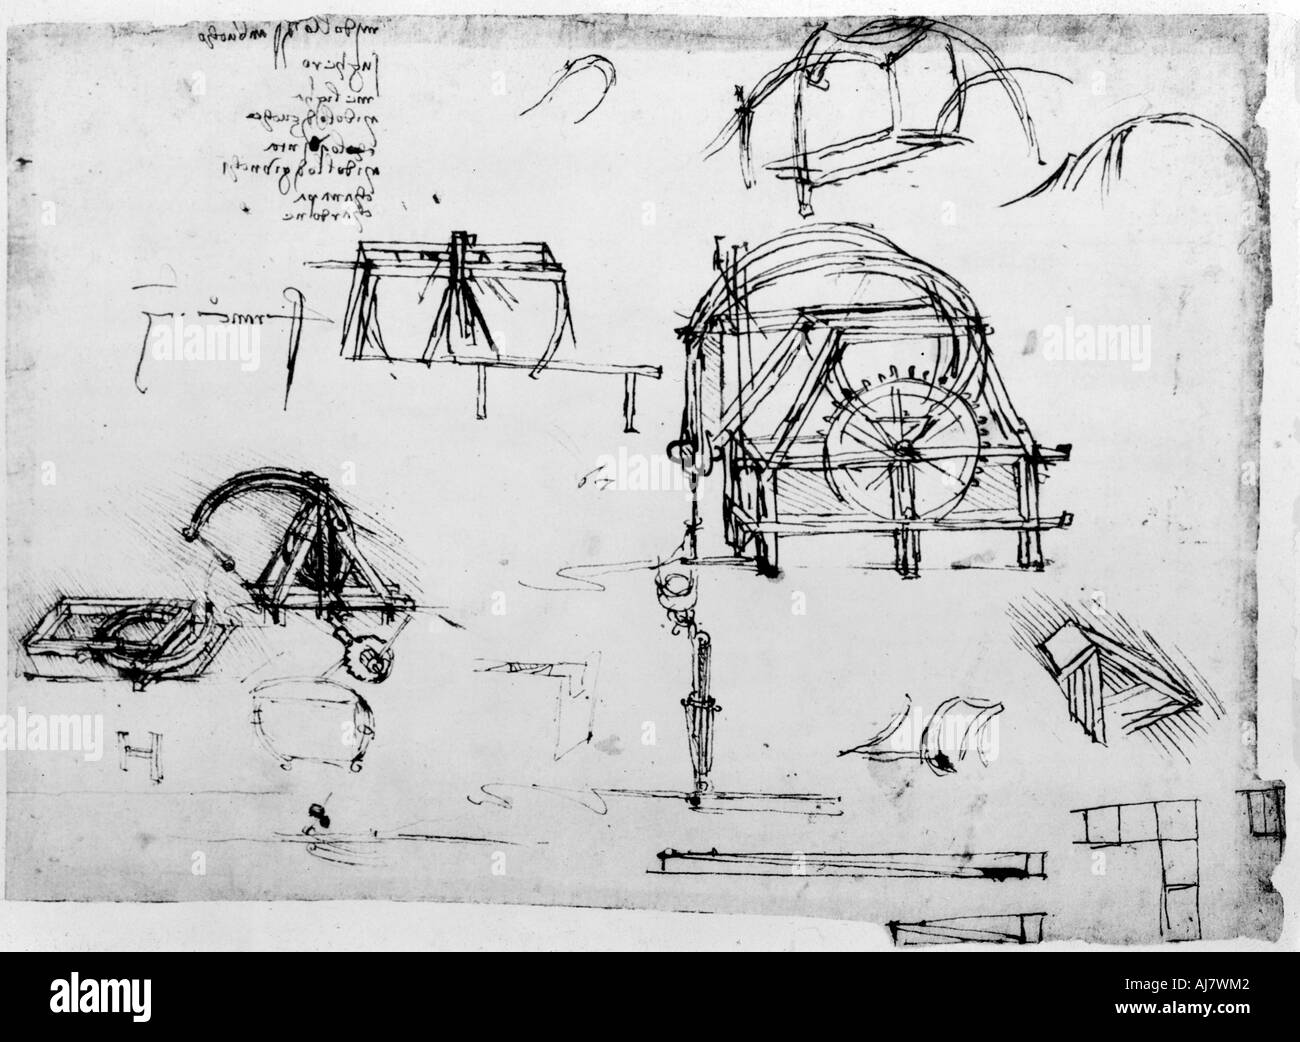 Croquis d'un perpétuel mouvement appareil conçu par Léonard de Vinci, c1472-1519. Artiste : Leonardo da Vinci Banque D'Images